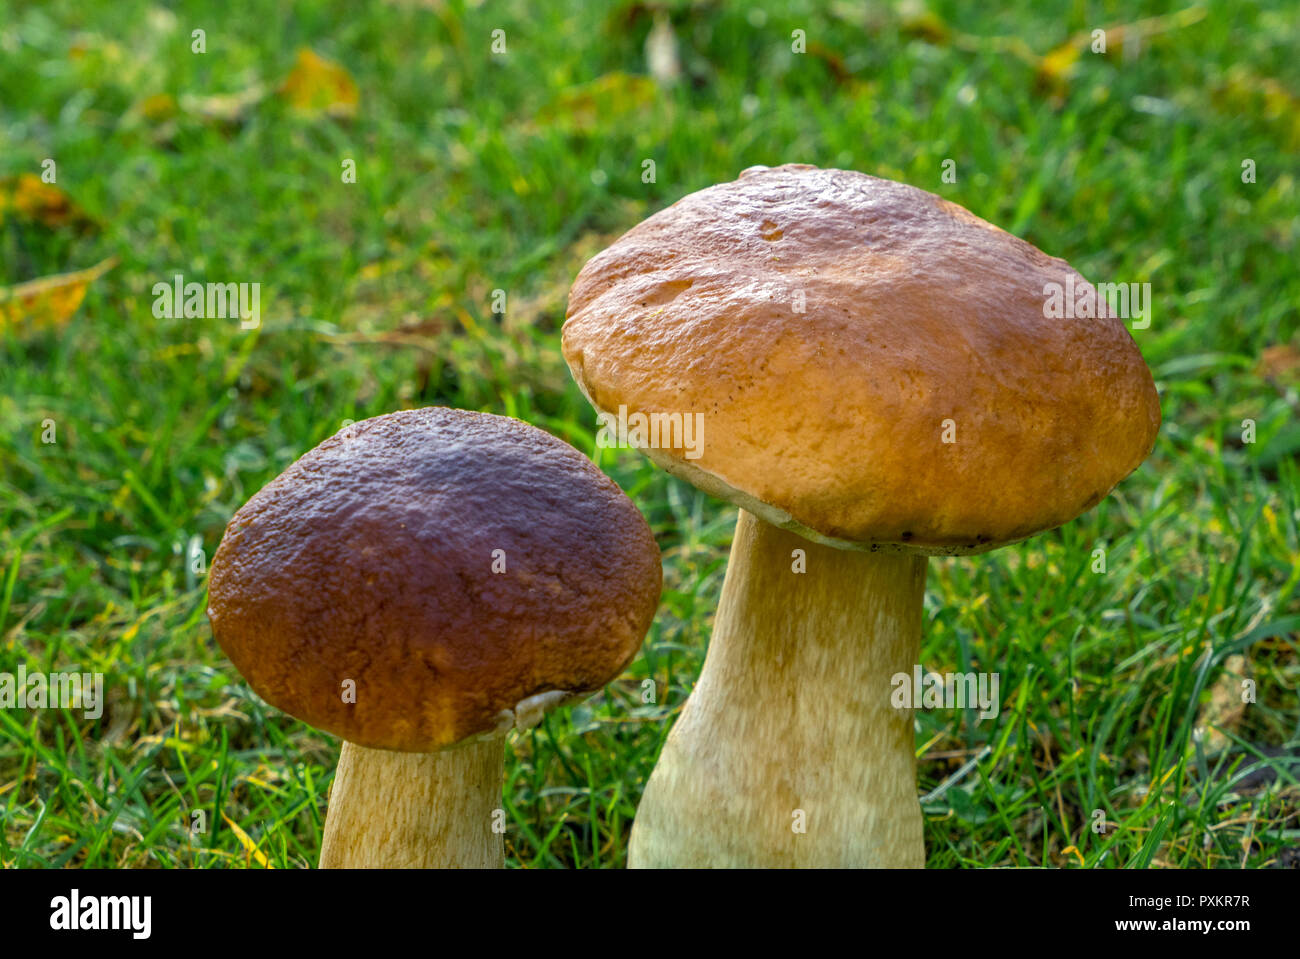 Funghi porcini o funghi porcini (Boletus edulis), funghi commestibili Foto  stock - Alamy